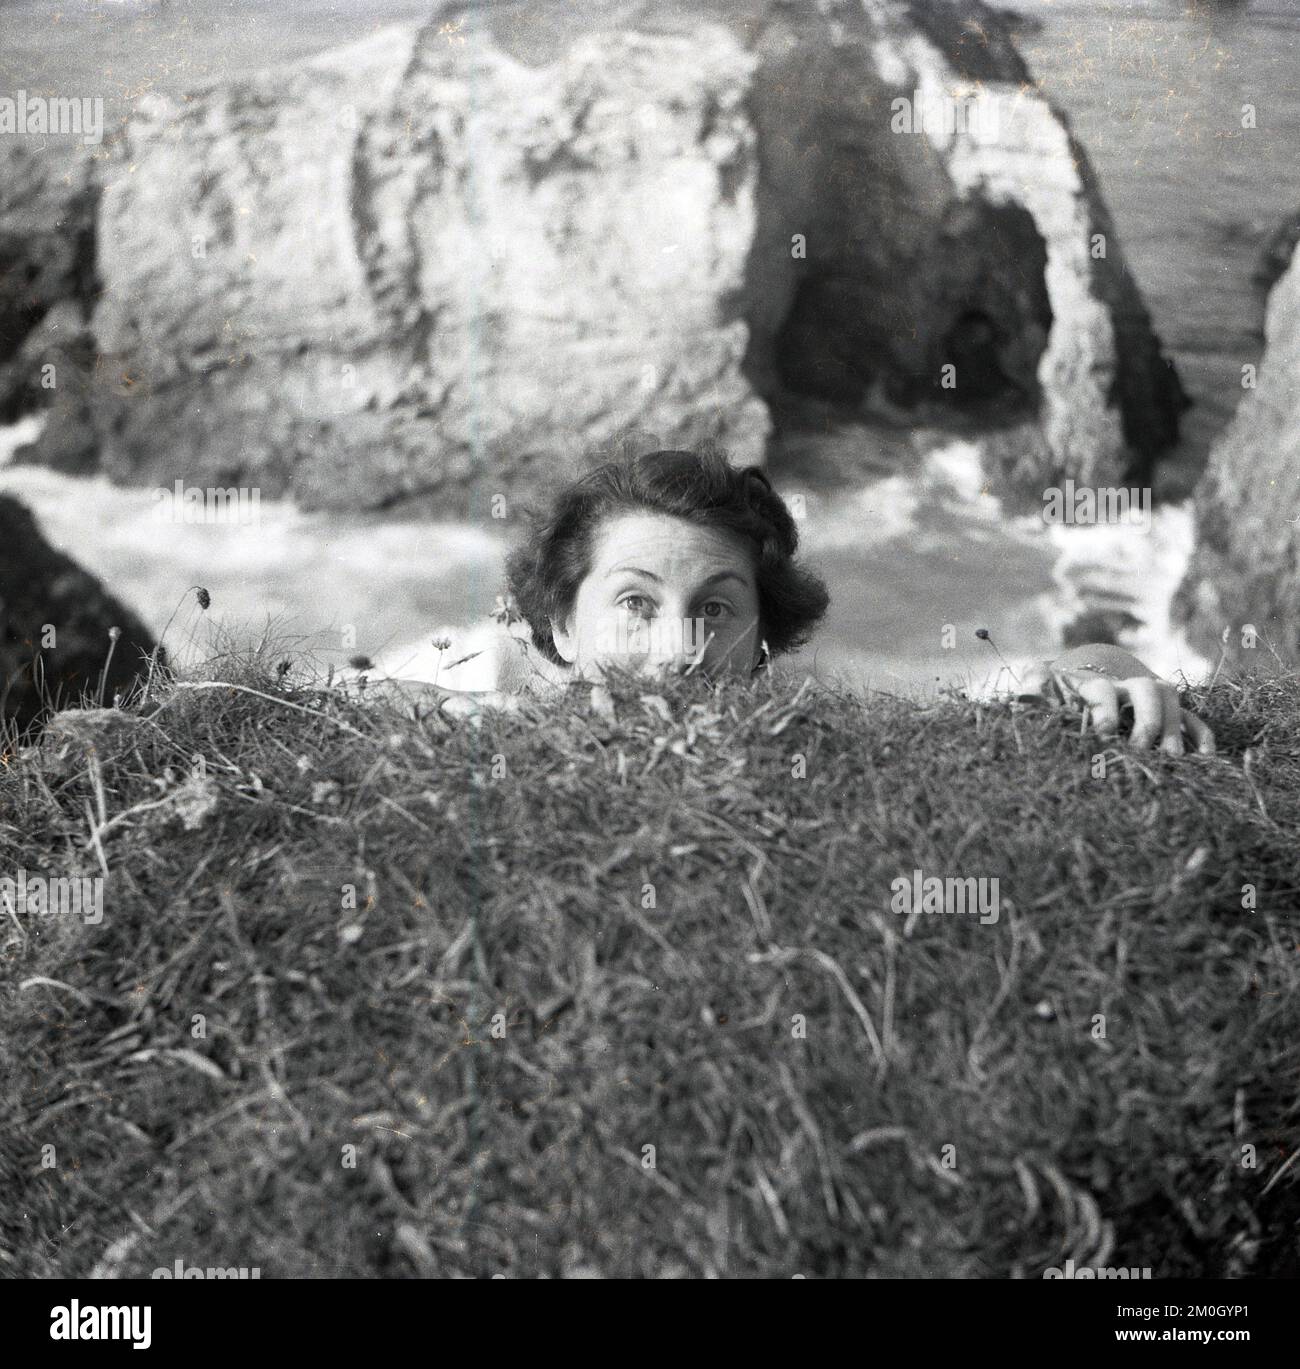 1950s, histórico, en la costa, en lo alto del océano, una dama ocultando la mitad de su rostro bajo el suelo, fingiendo tal vez que se está aferrando a la cara del acantilado o voladizo para sorprender a un amigo, Inglaterra, Reino Unido. Foto de stock